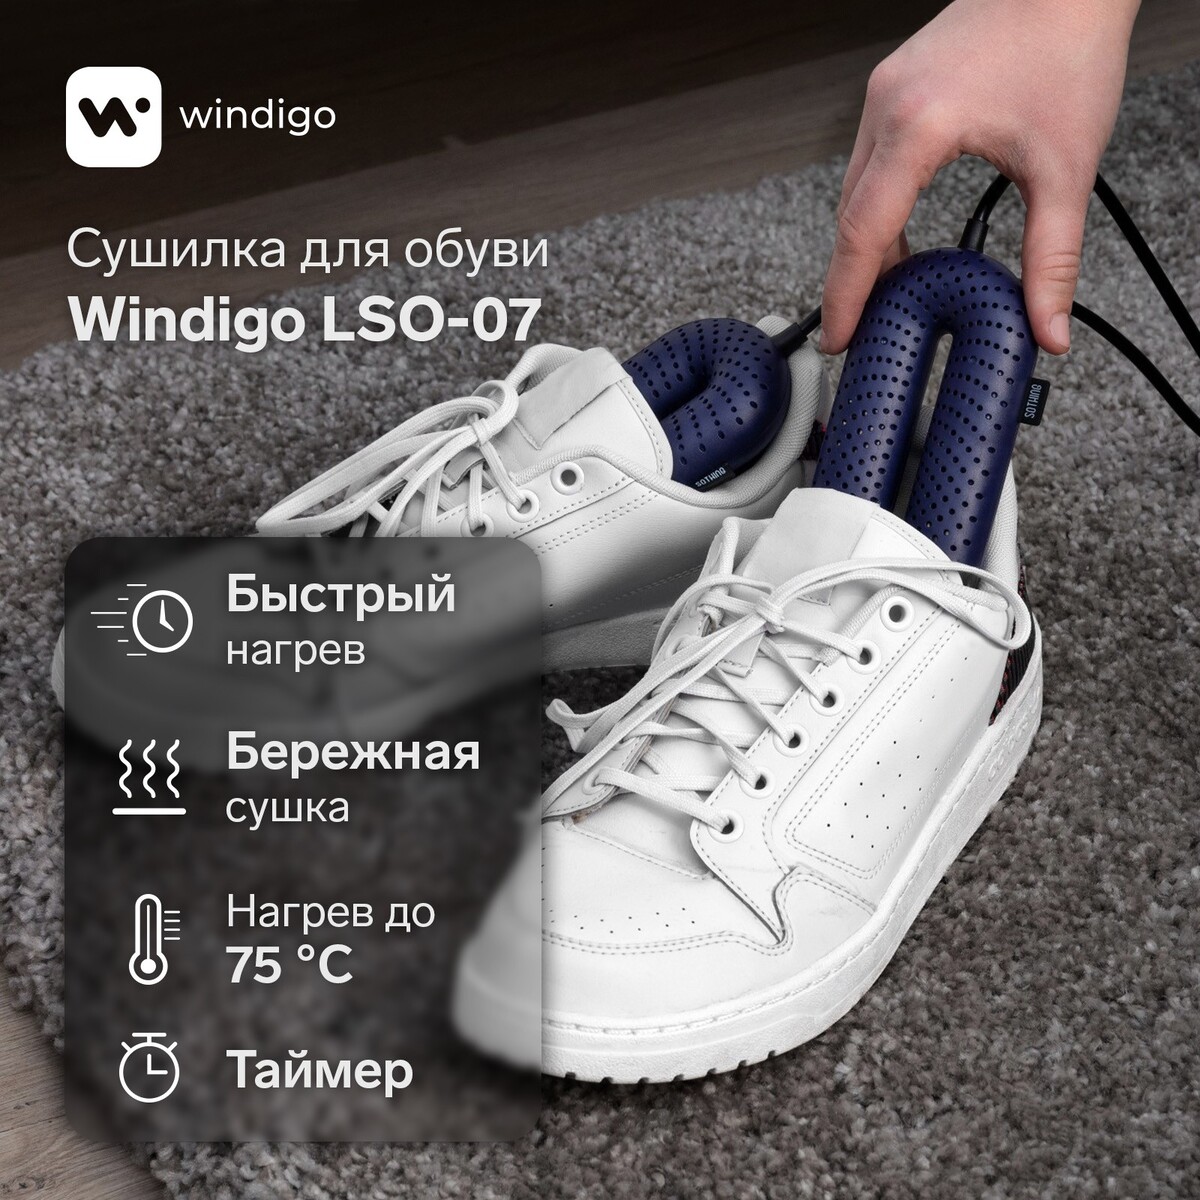 Сушилка для обуви windigo lso-07, 17 см, 20 вт, индикатор, таймер 3/6/9 часов, синяя сушилка для обуви windigo lso 04 17 см 20 вт индикатор синяя